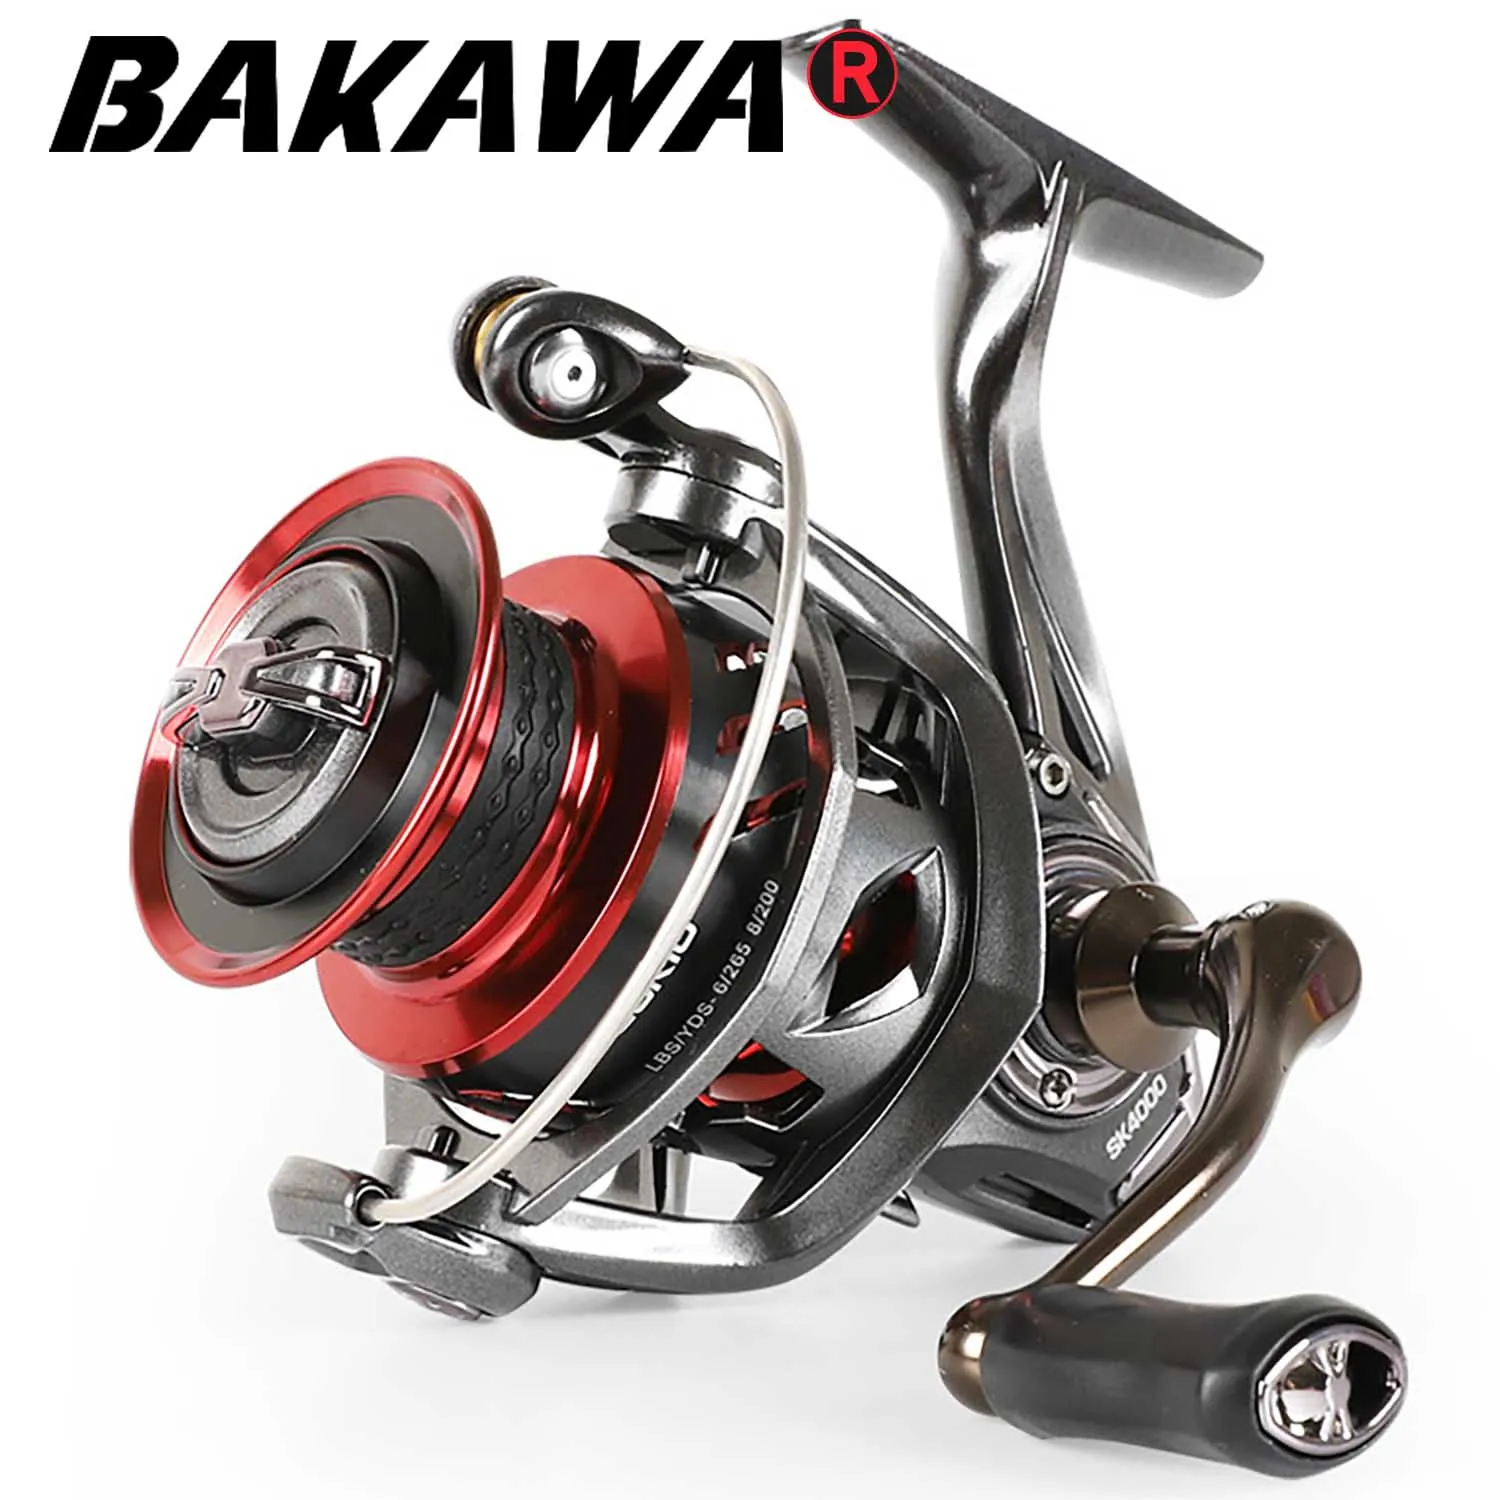 

BAKAWA Pesca Spinning Fishing Reel SK2000-6000 Carp Wheel For Saltwater 6+1BB CNC Metal Spool And Rocker 12kg Max Drag